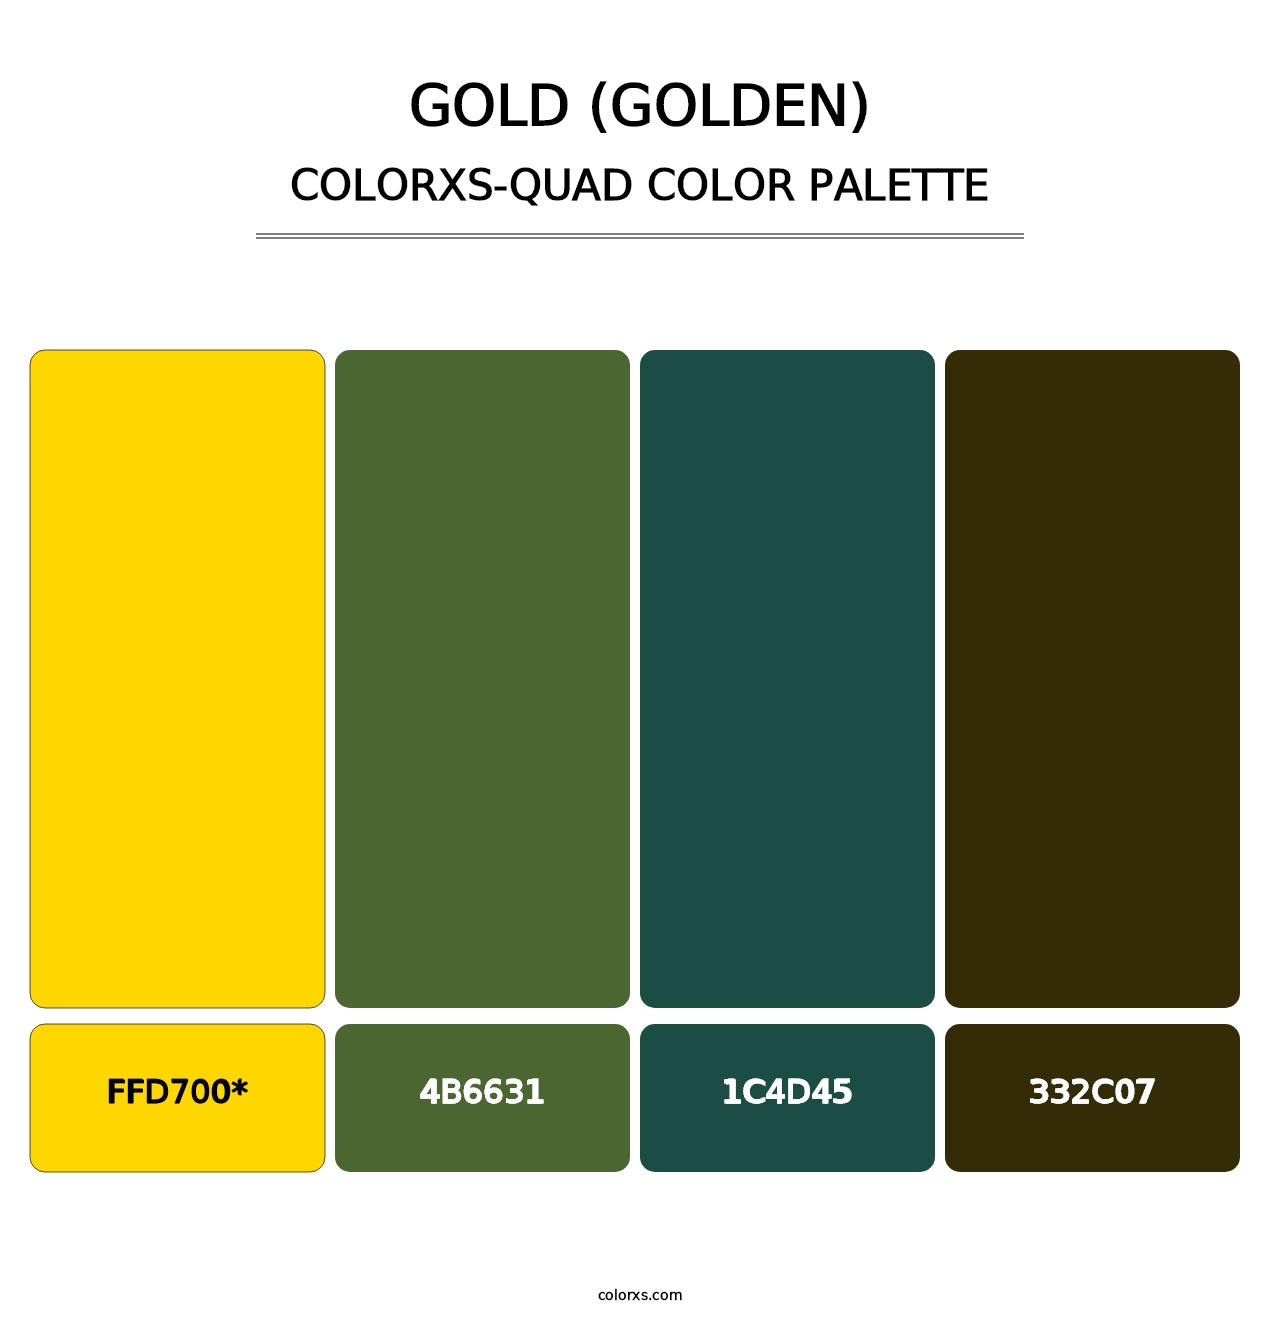 Gold (Golden) - Colorxs Quad Palette